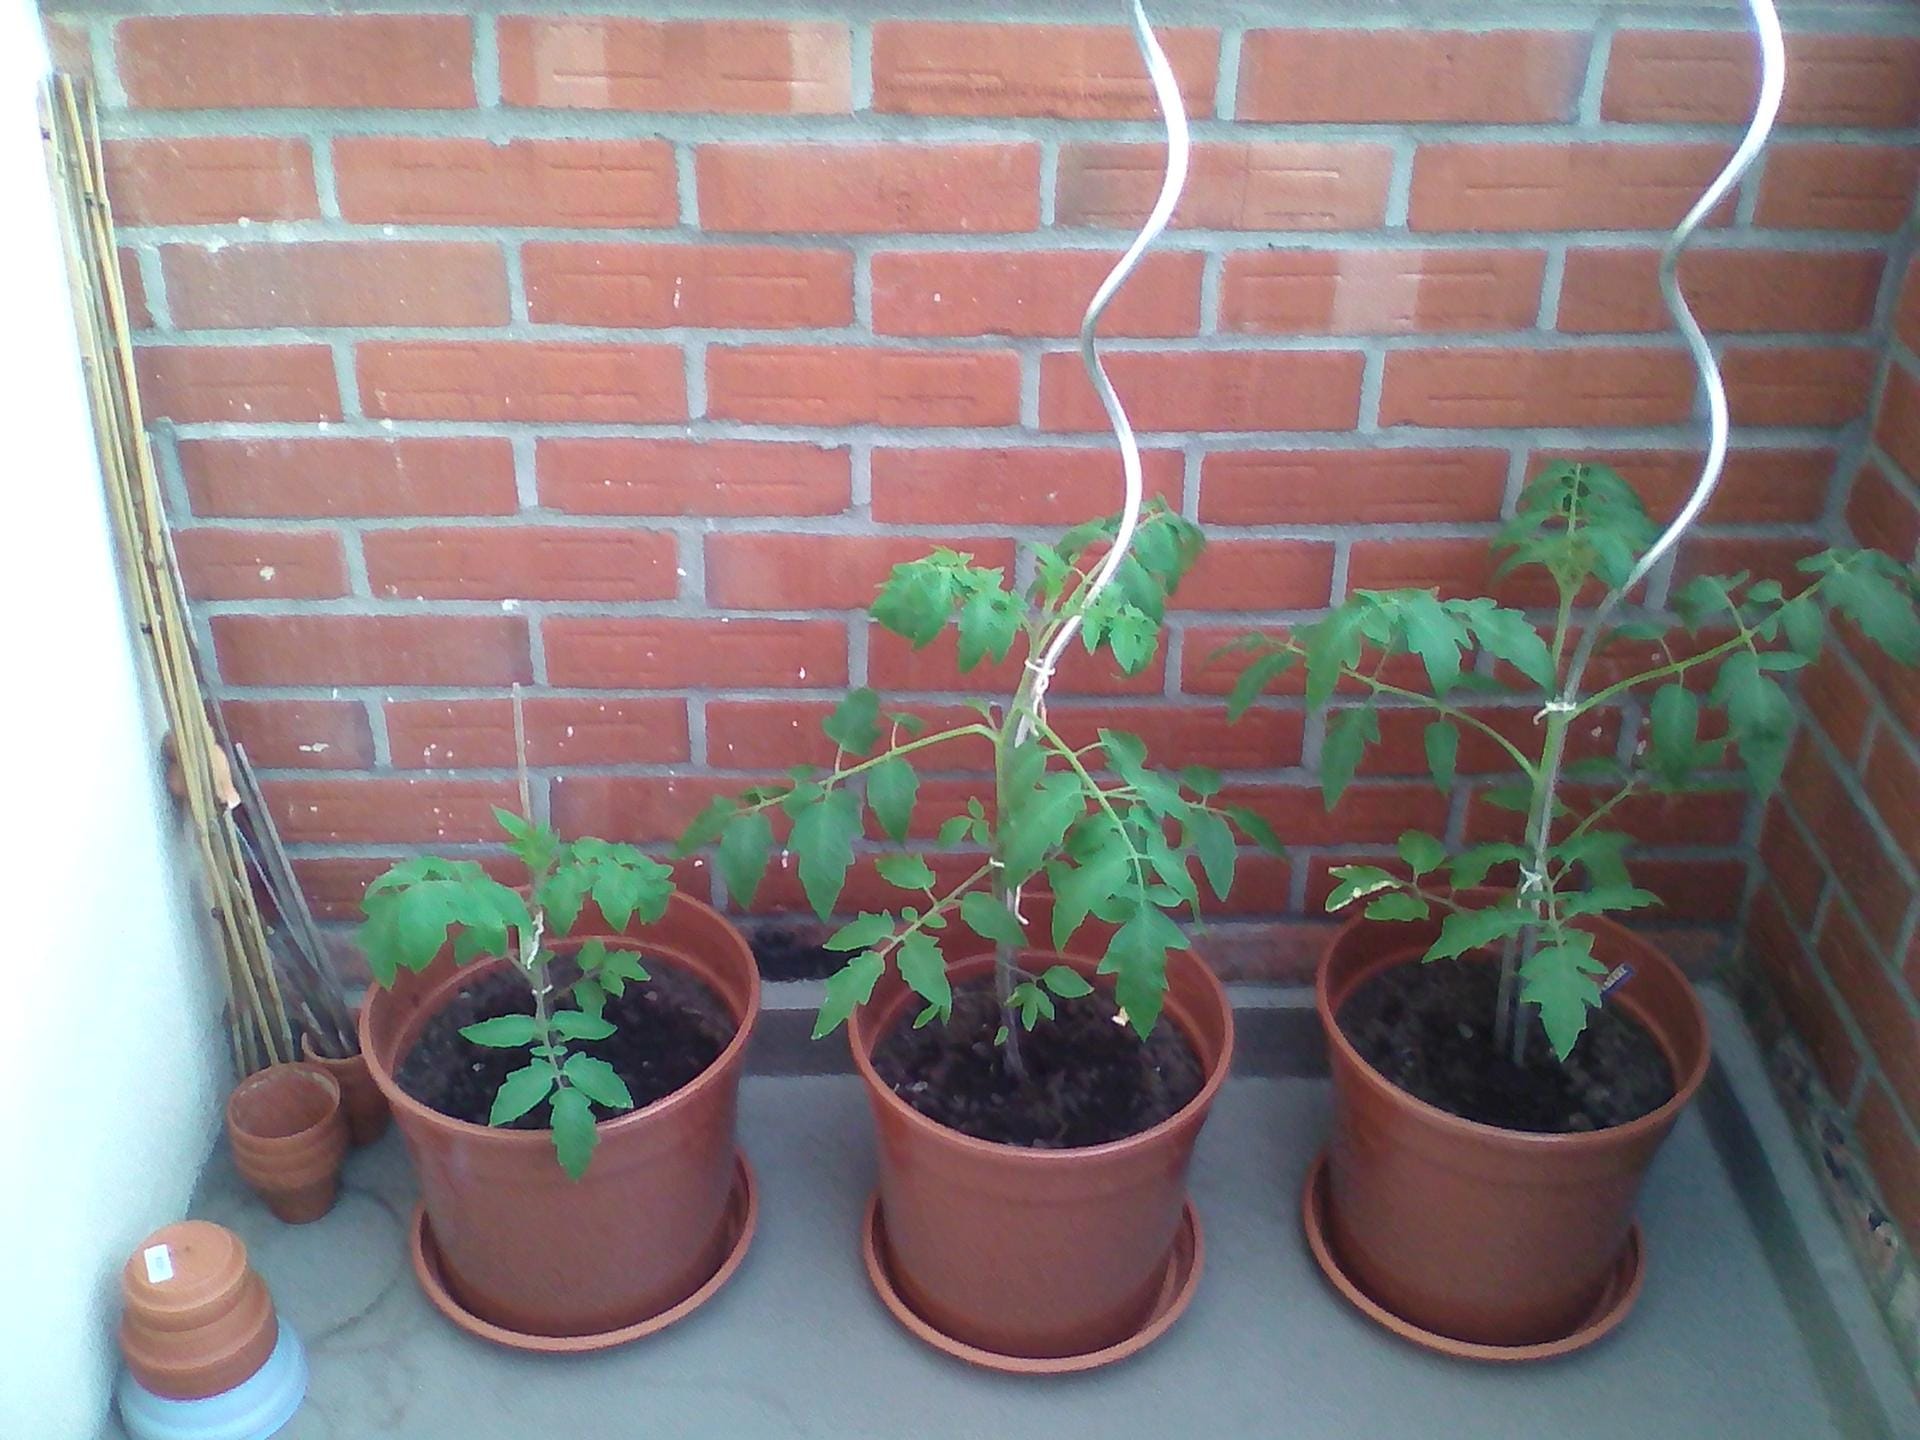 Tomaten in Kübeln: Zwei Tomatenspiralstäbe stützen die Sperli Bio-Tomate (mittig) und Kiepenkerl Tomate (rechts).